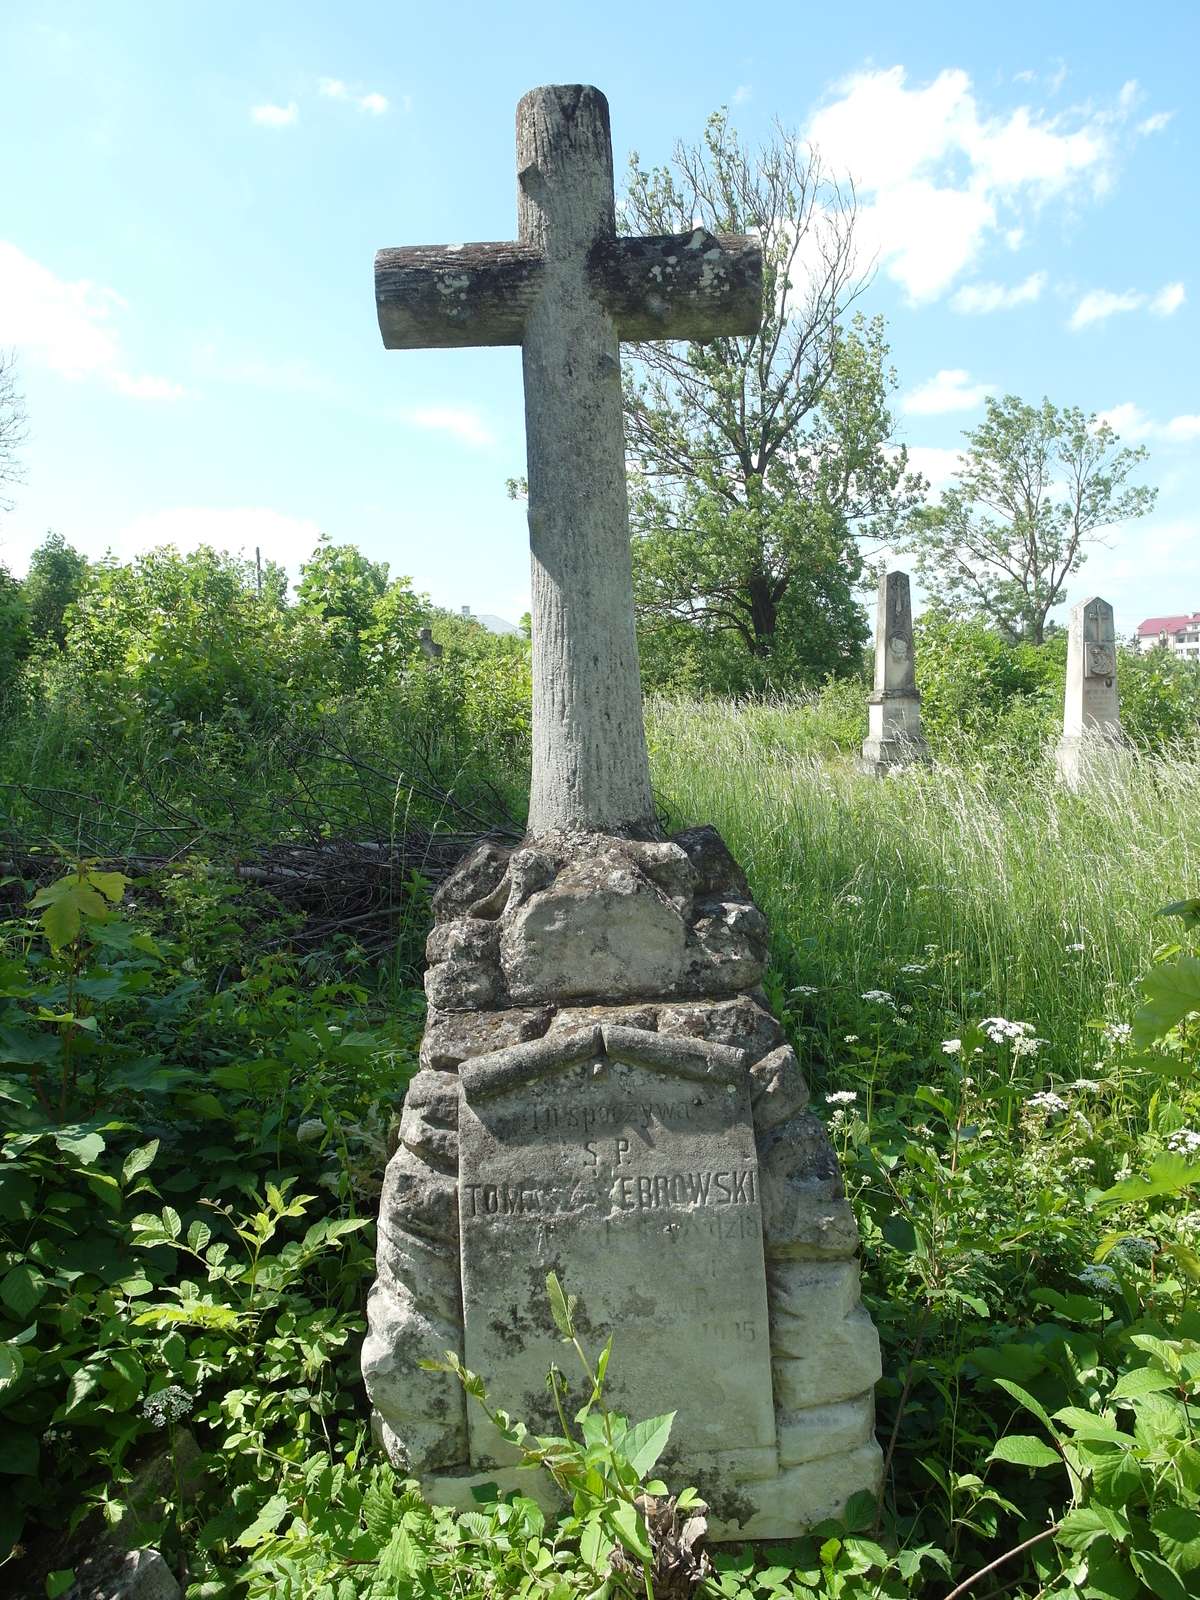 Tomas Żebrowski's tombstone, Zbaraż cemetery, as of 2018.